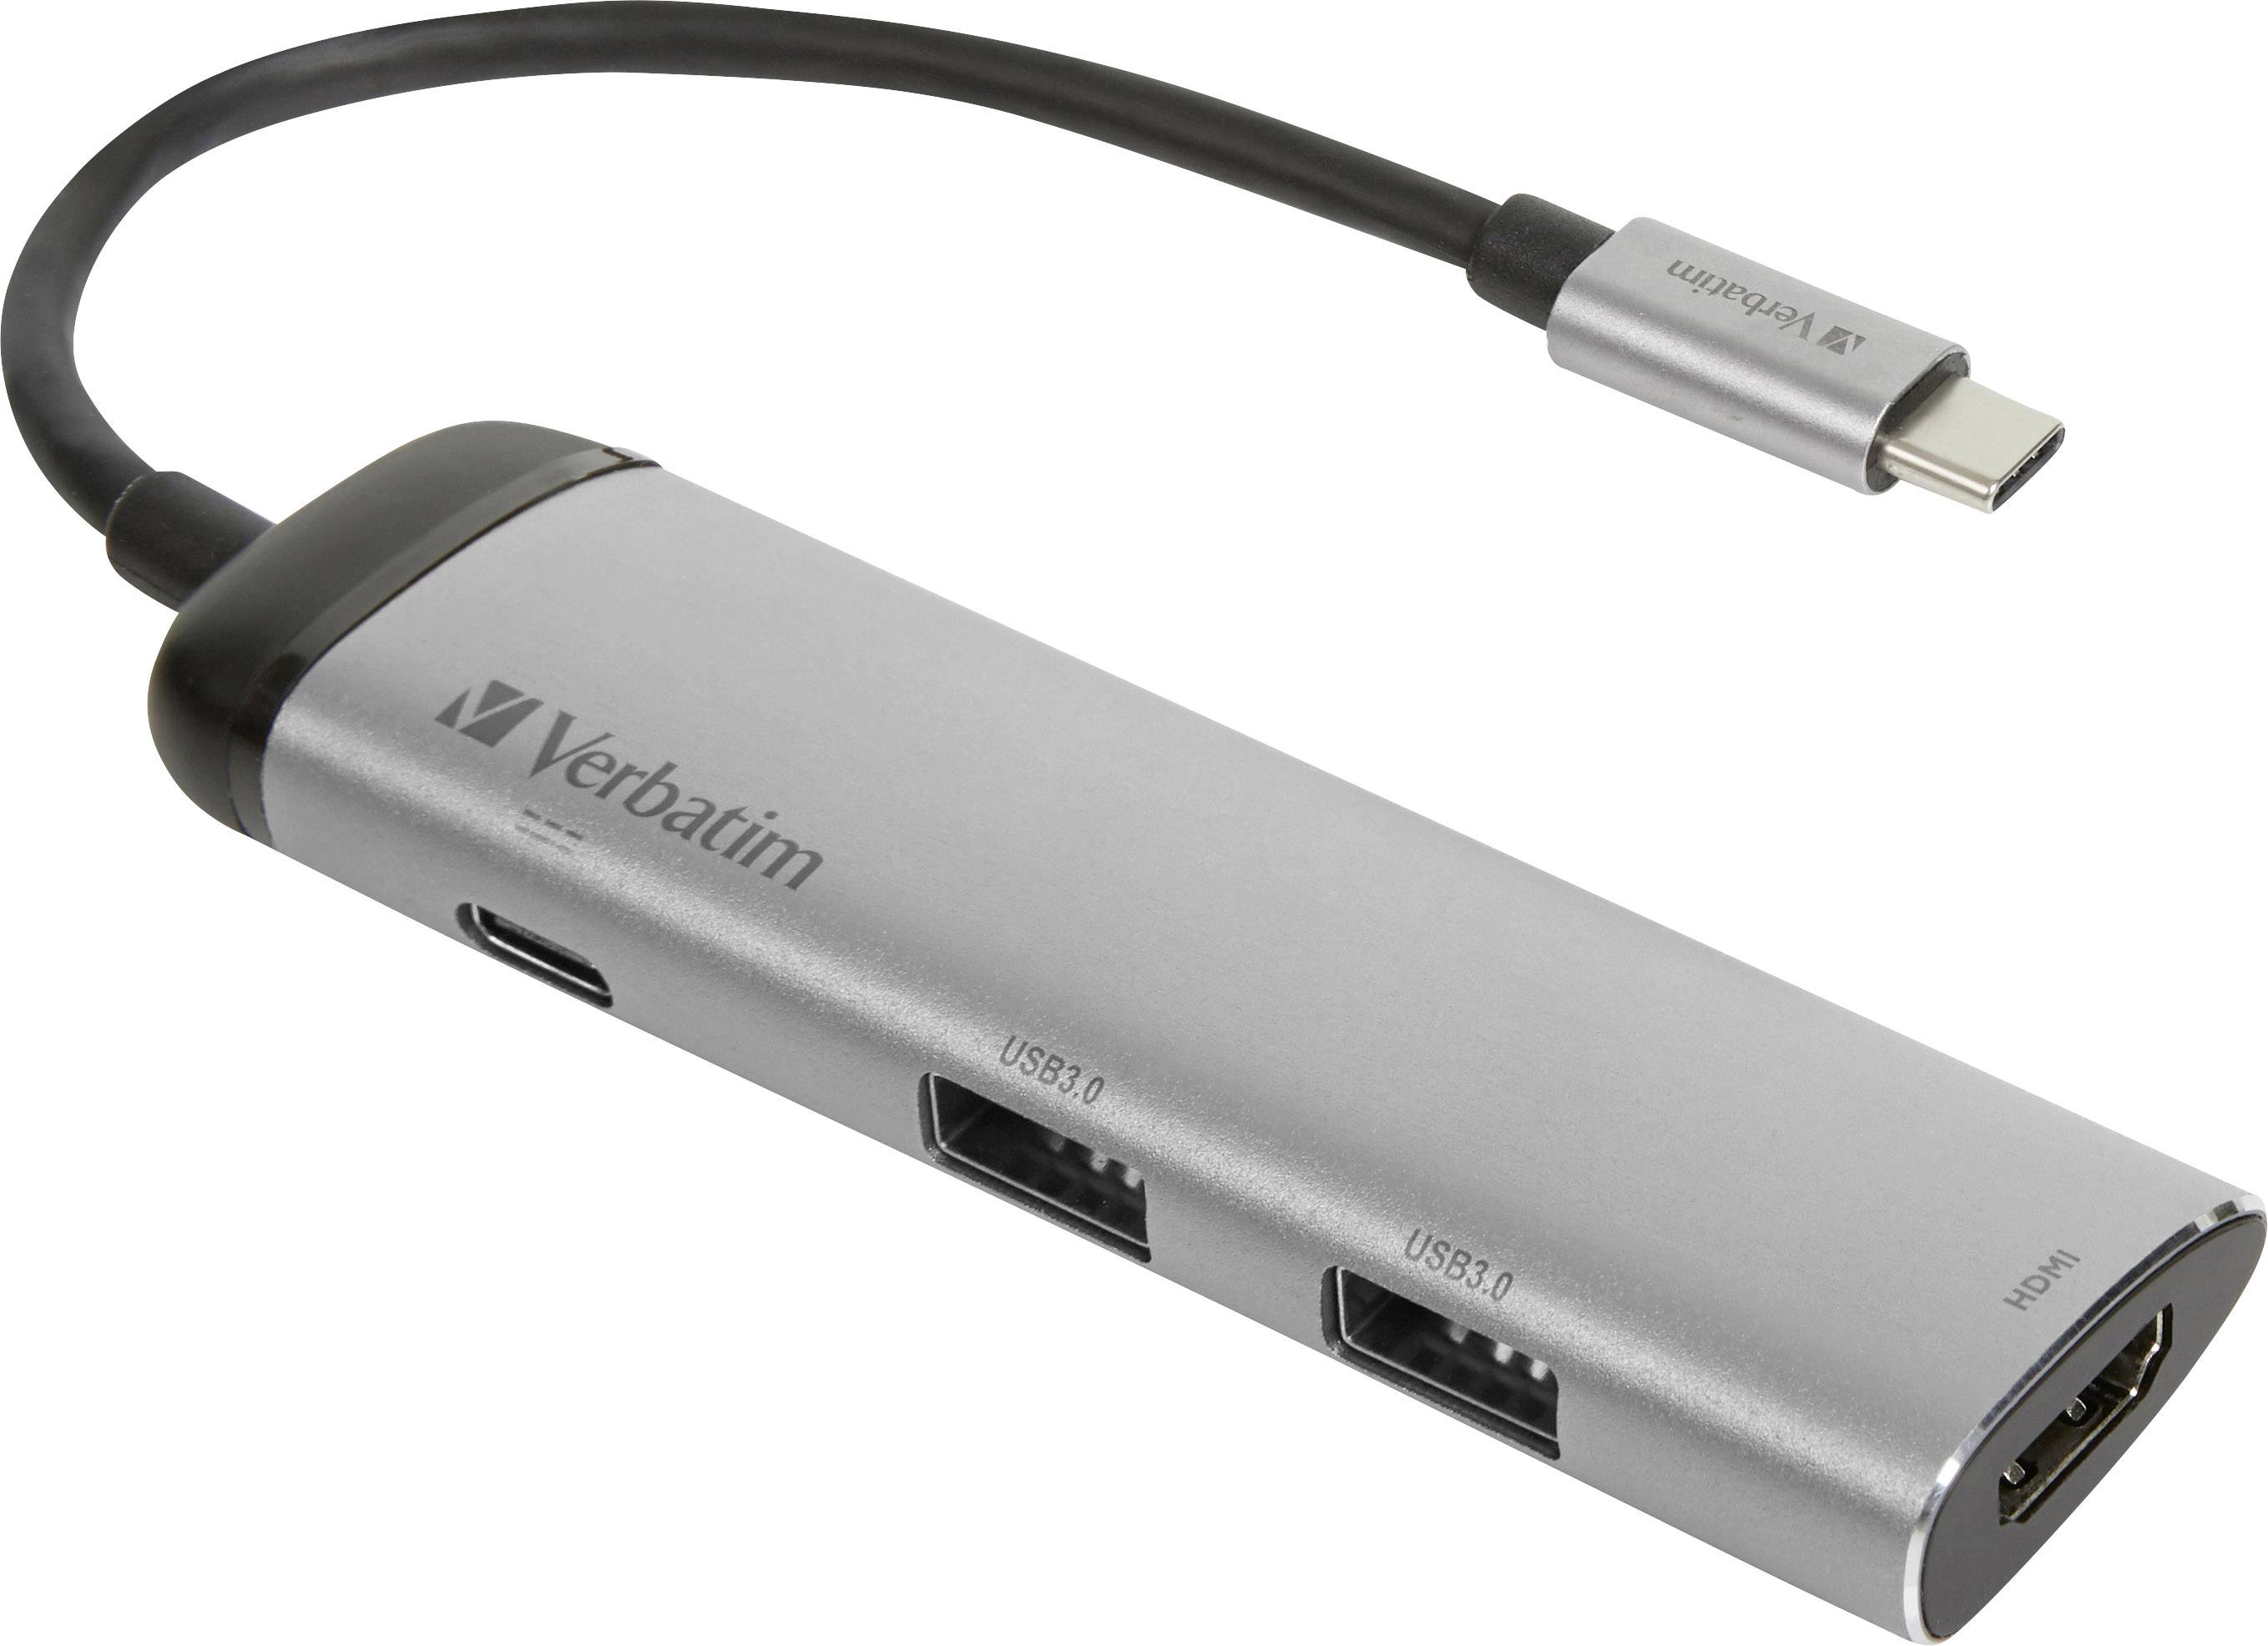 VERBATIM 49140 USB-C ADAPTER USB 3.1